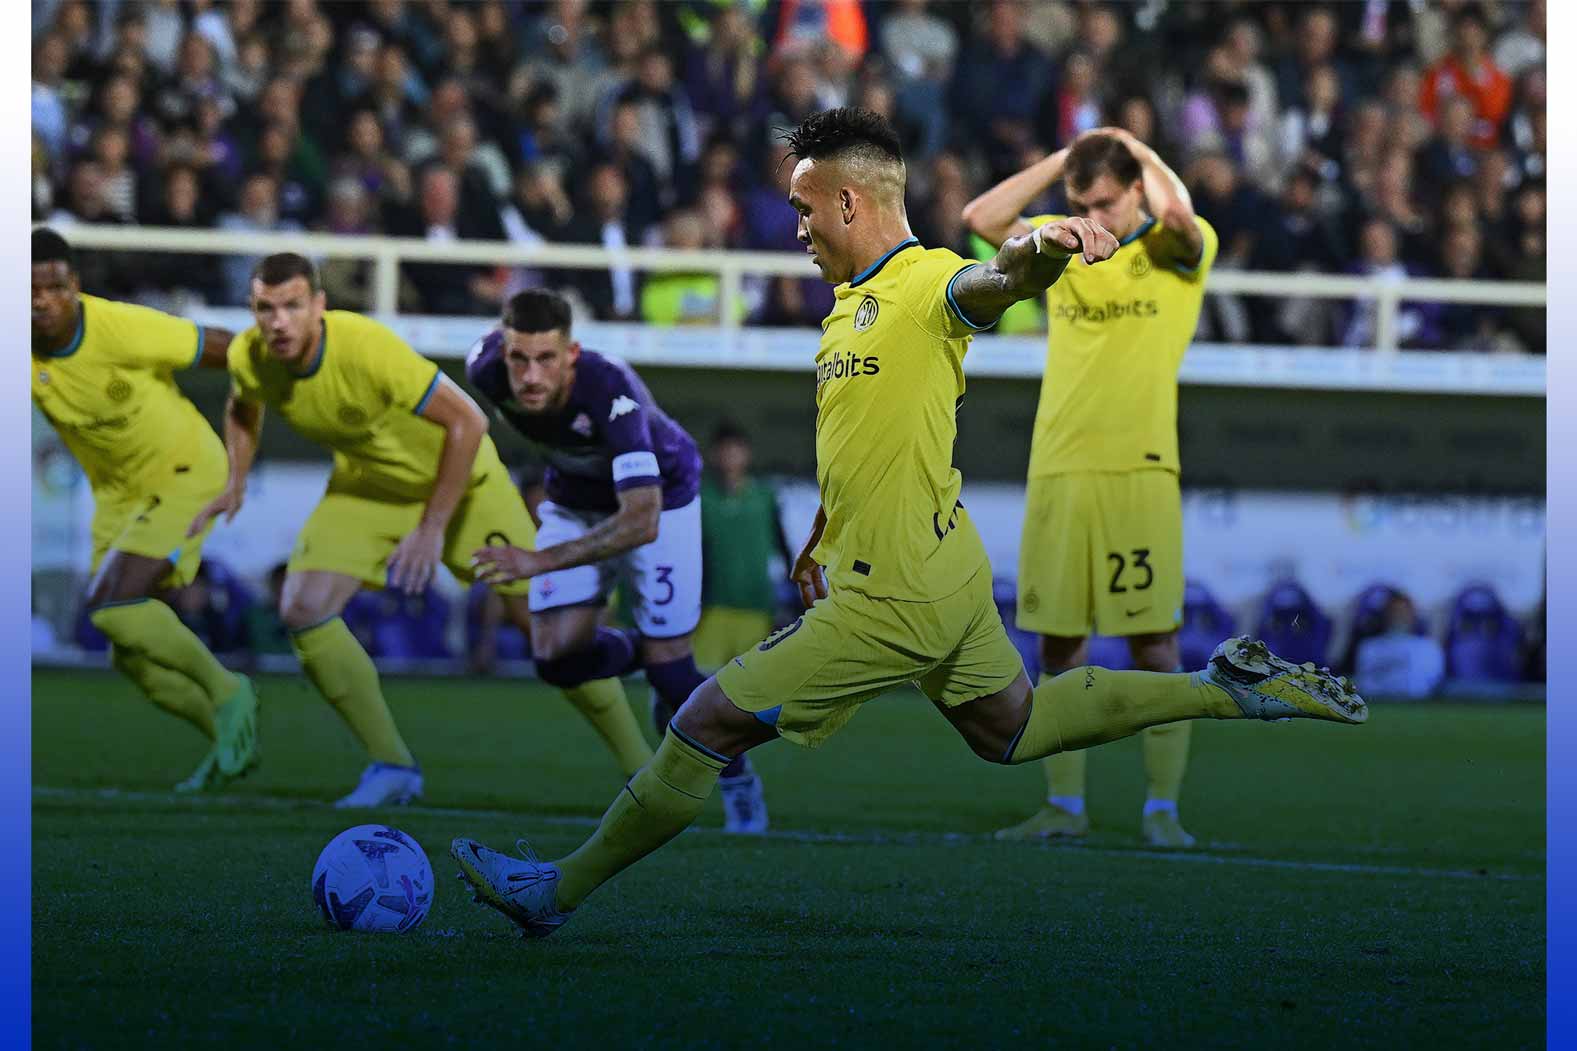 Inter marca nos acréscimos e vence jogo de sete gols contra Fiorentina -  VAVEL Brasil